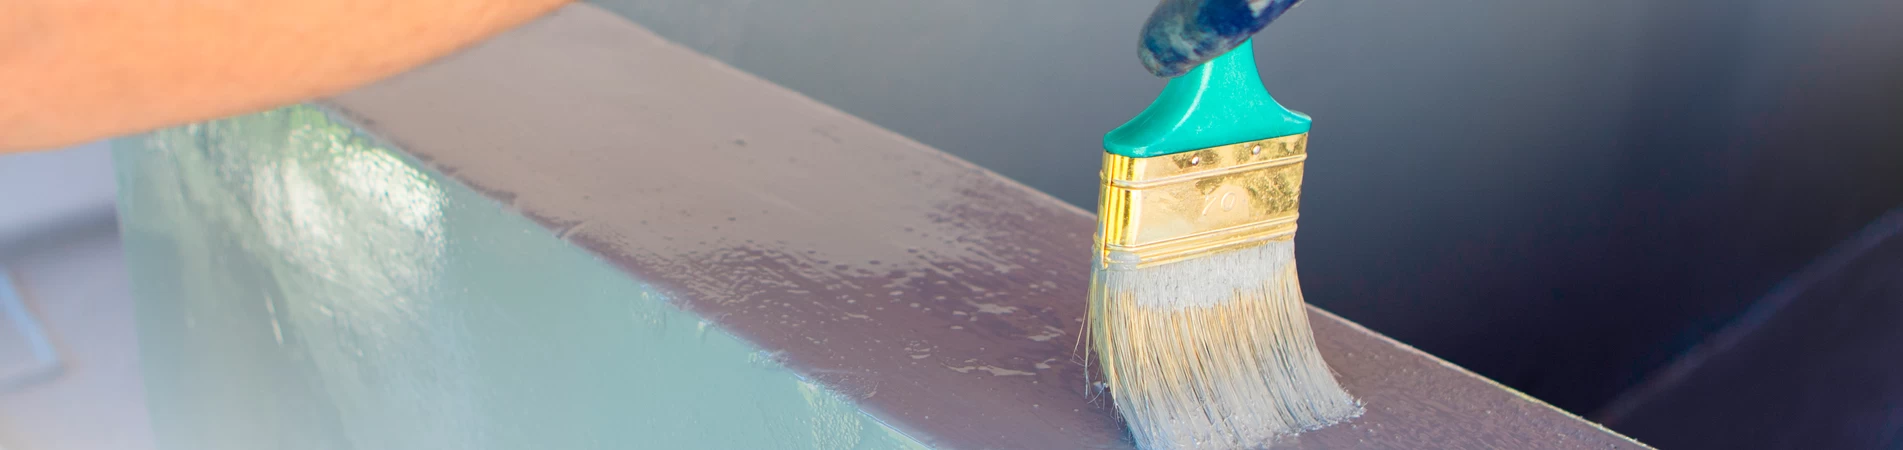 ¿Cómo eliminar la pintura suelta de una piscina antes de repintar?